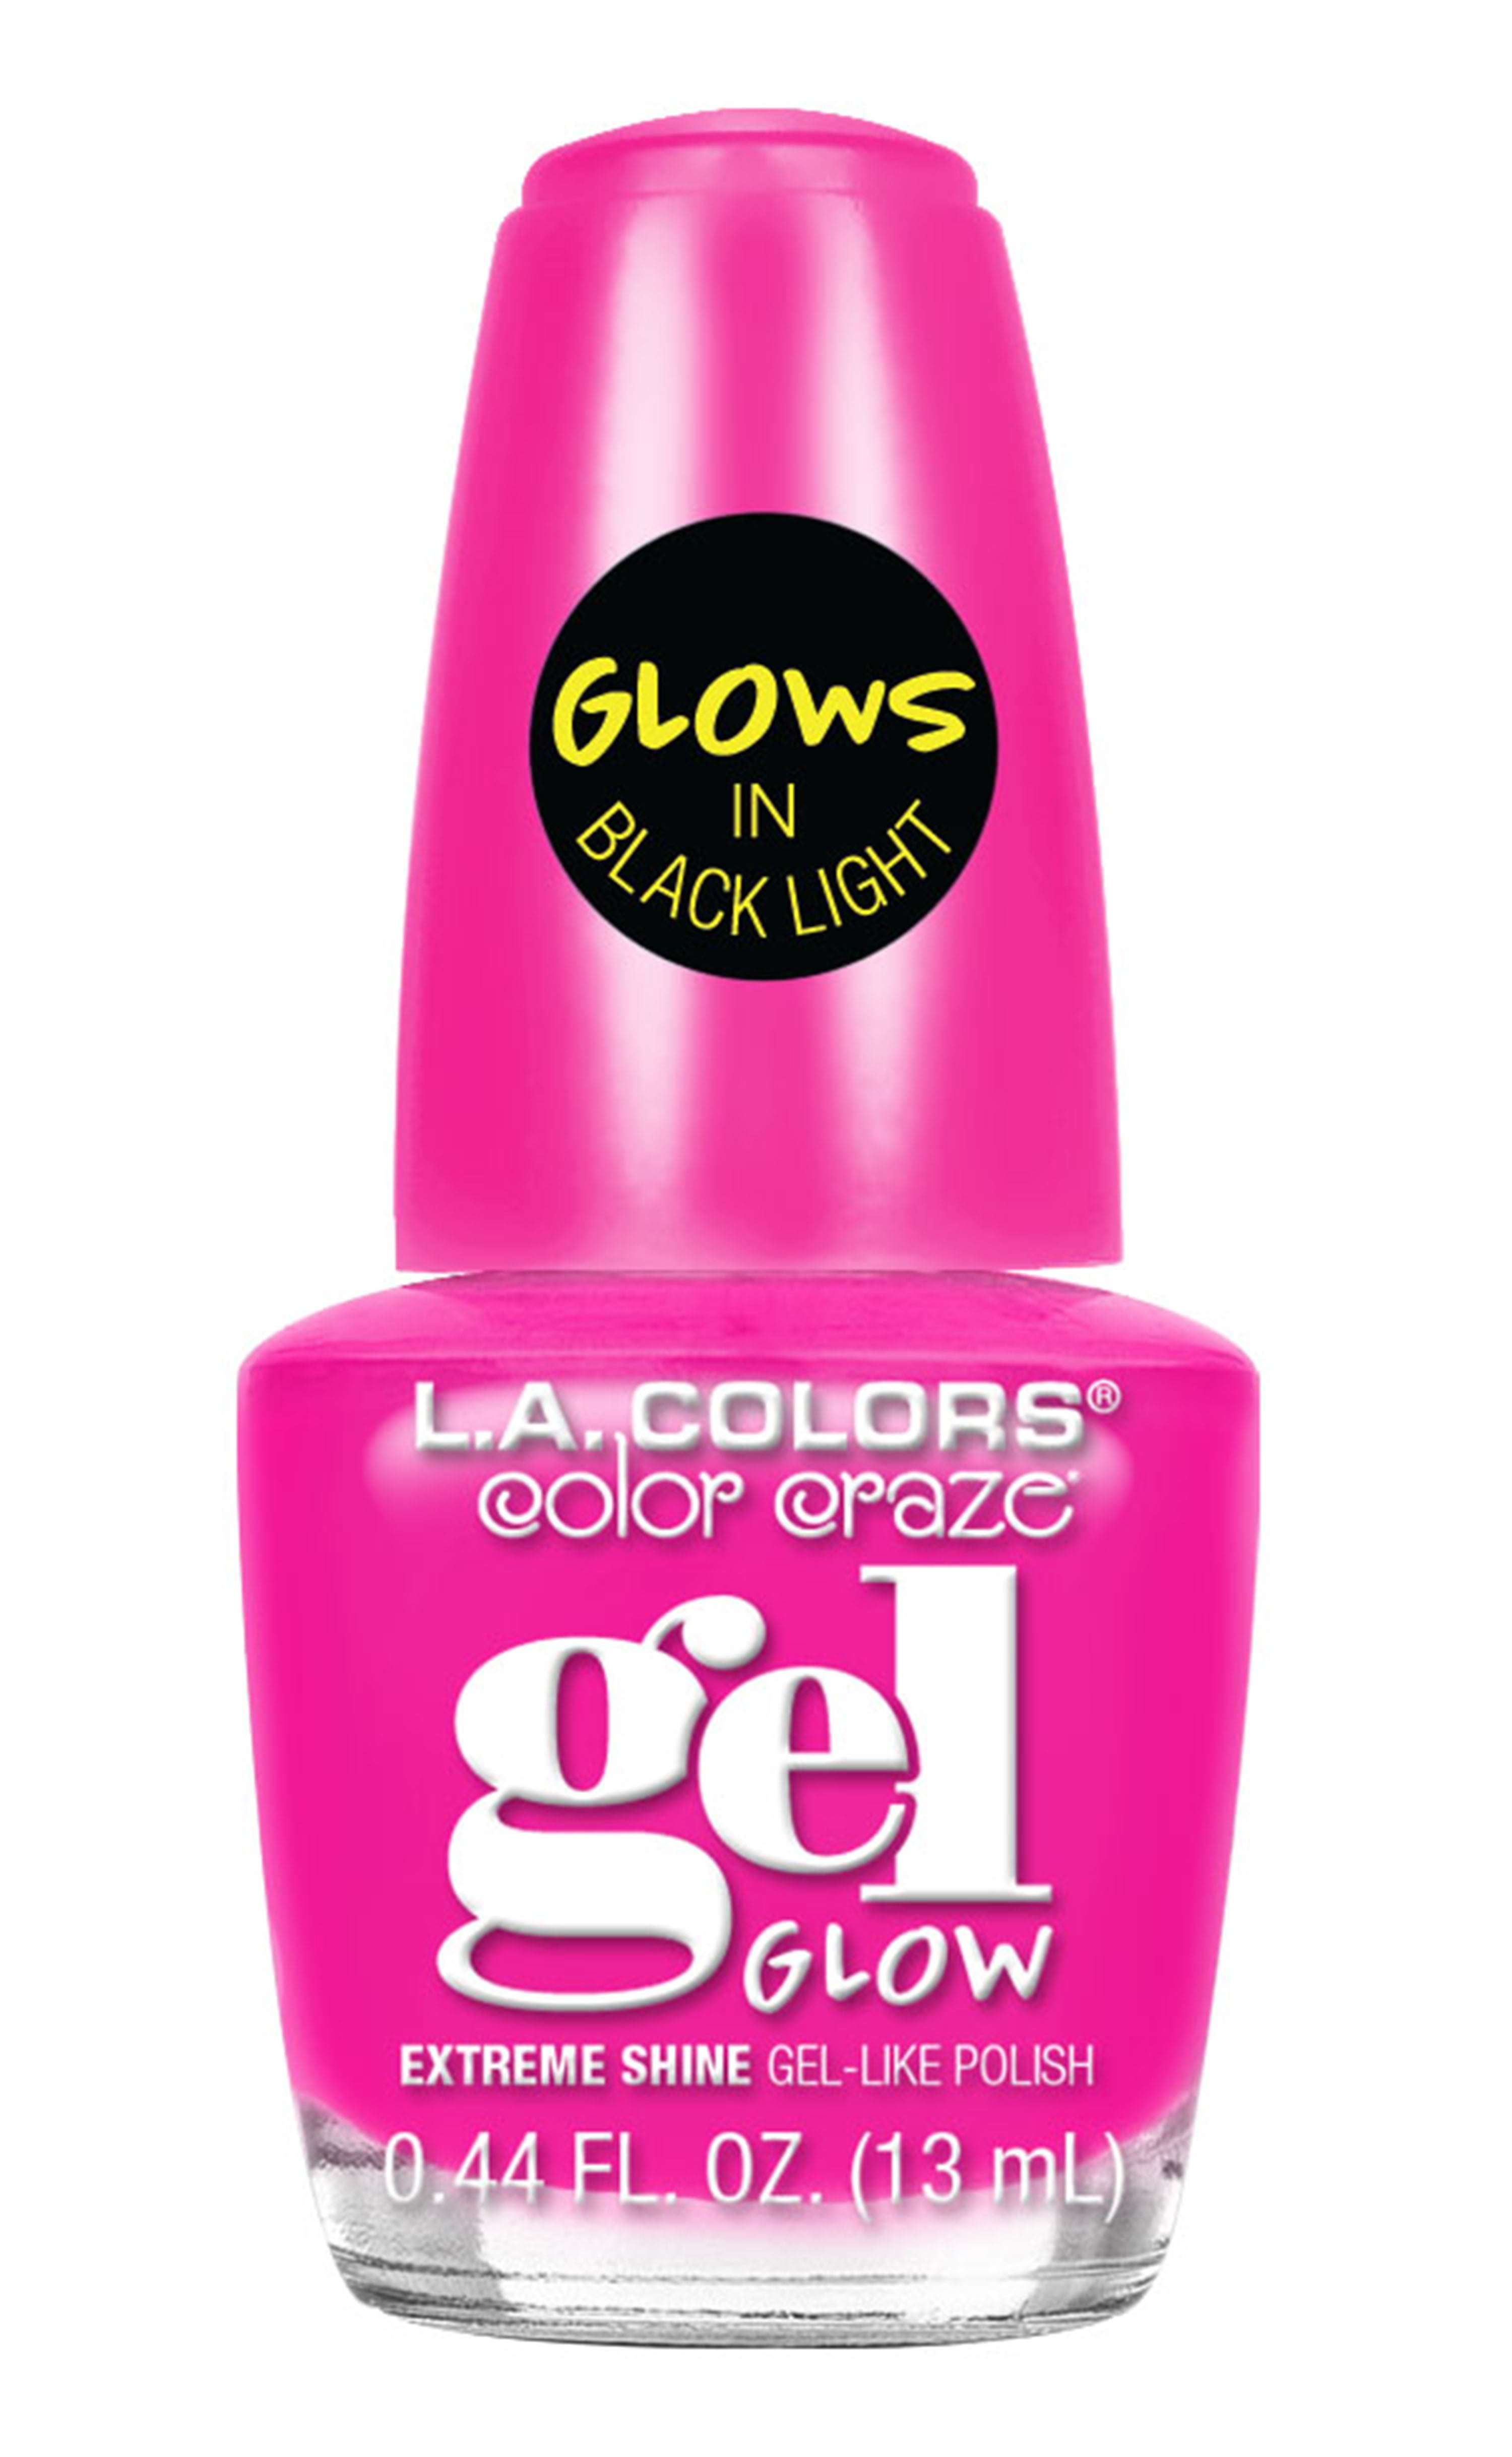 L.A. Colors Gel Shine Nail Polish (Glow 